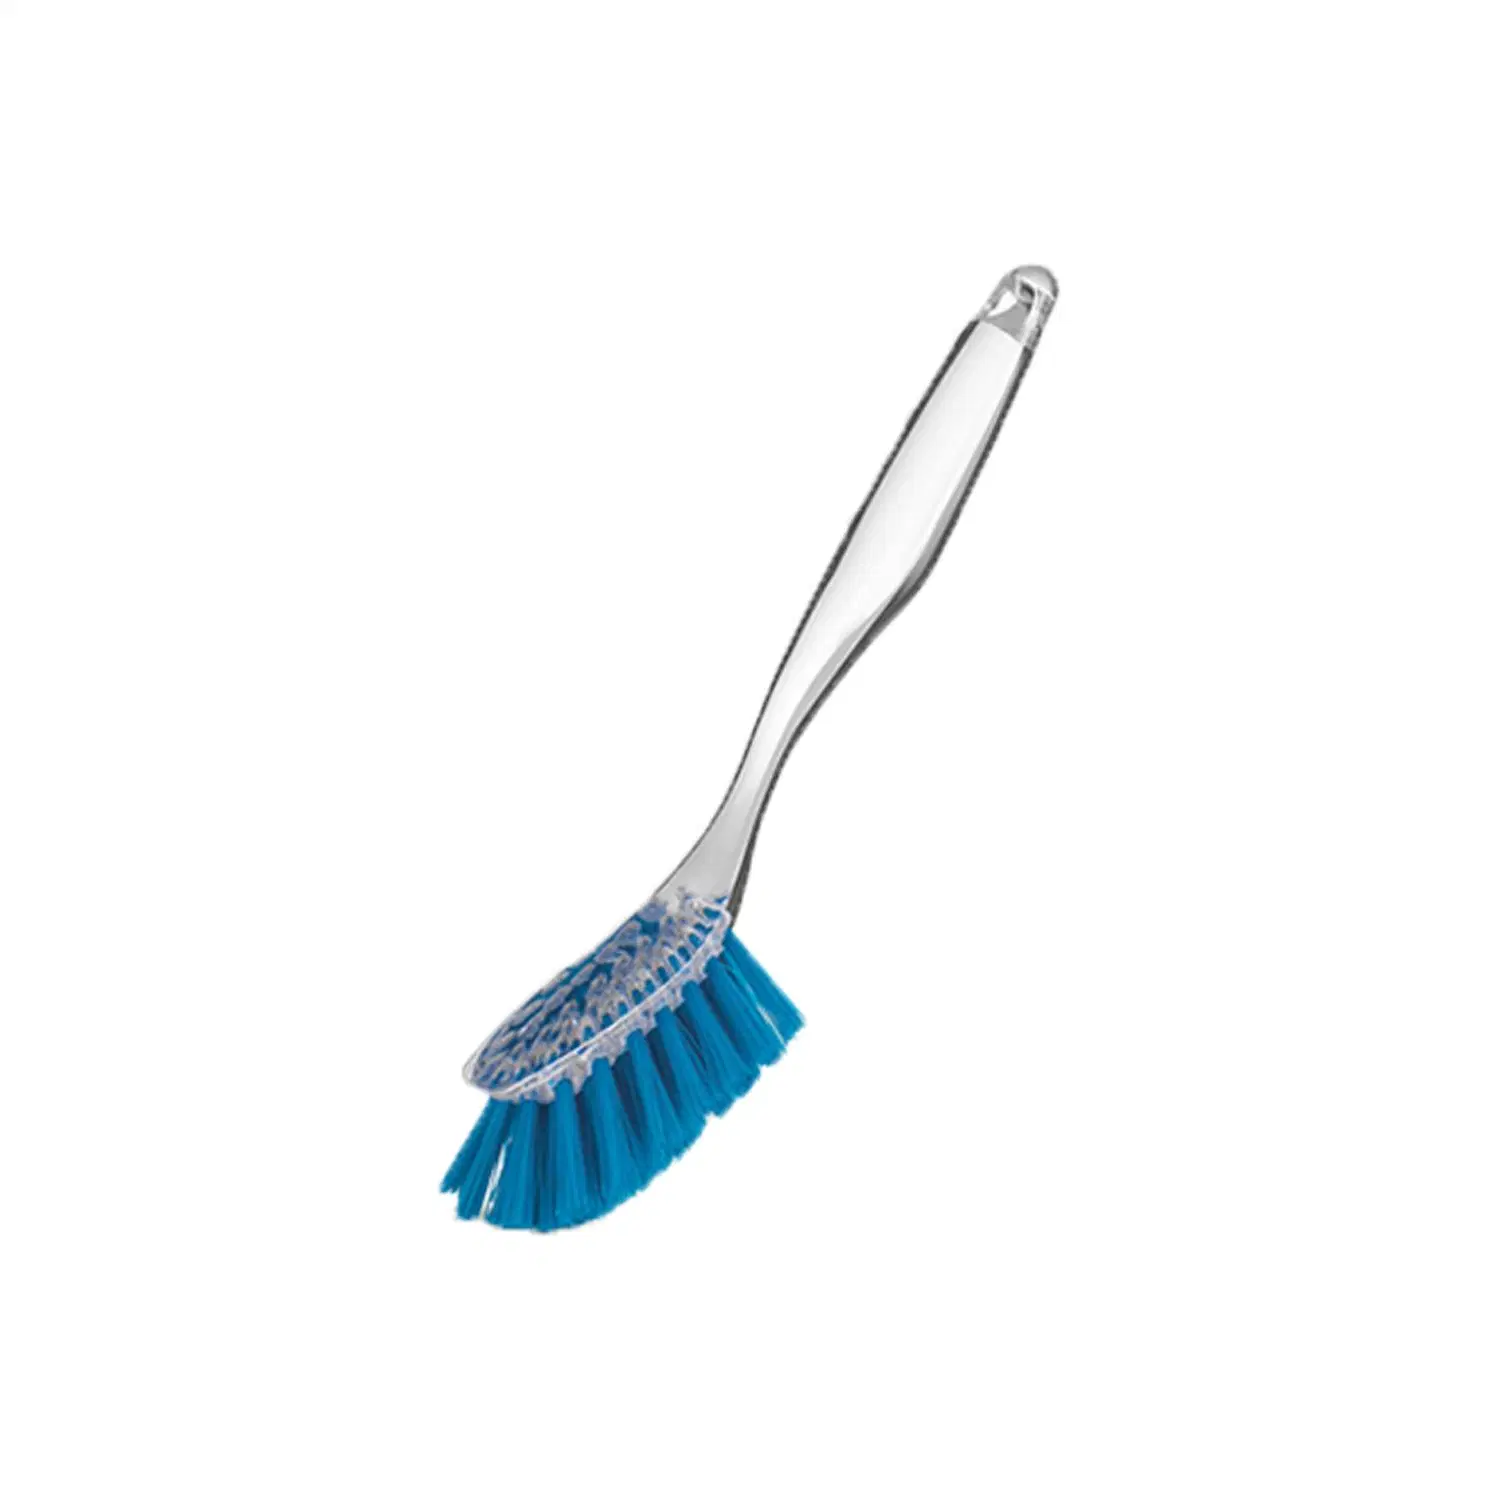 Couleur claire brosse plat brosse de cuisine brosse transparente brosse Home Brosse brosse brosse brosse brosse à dents